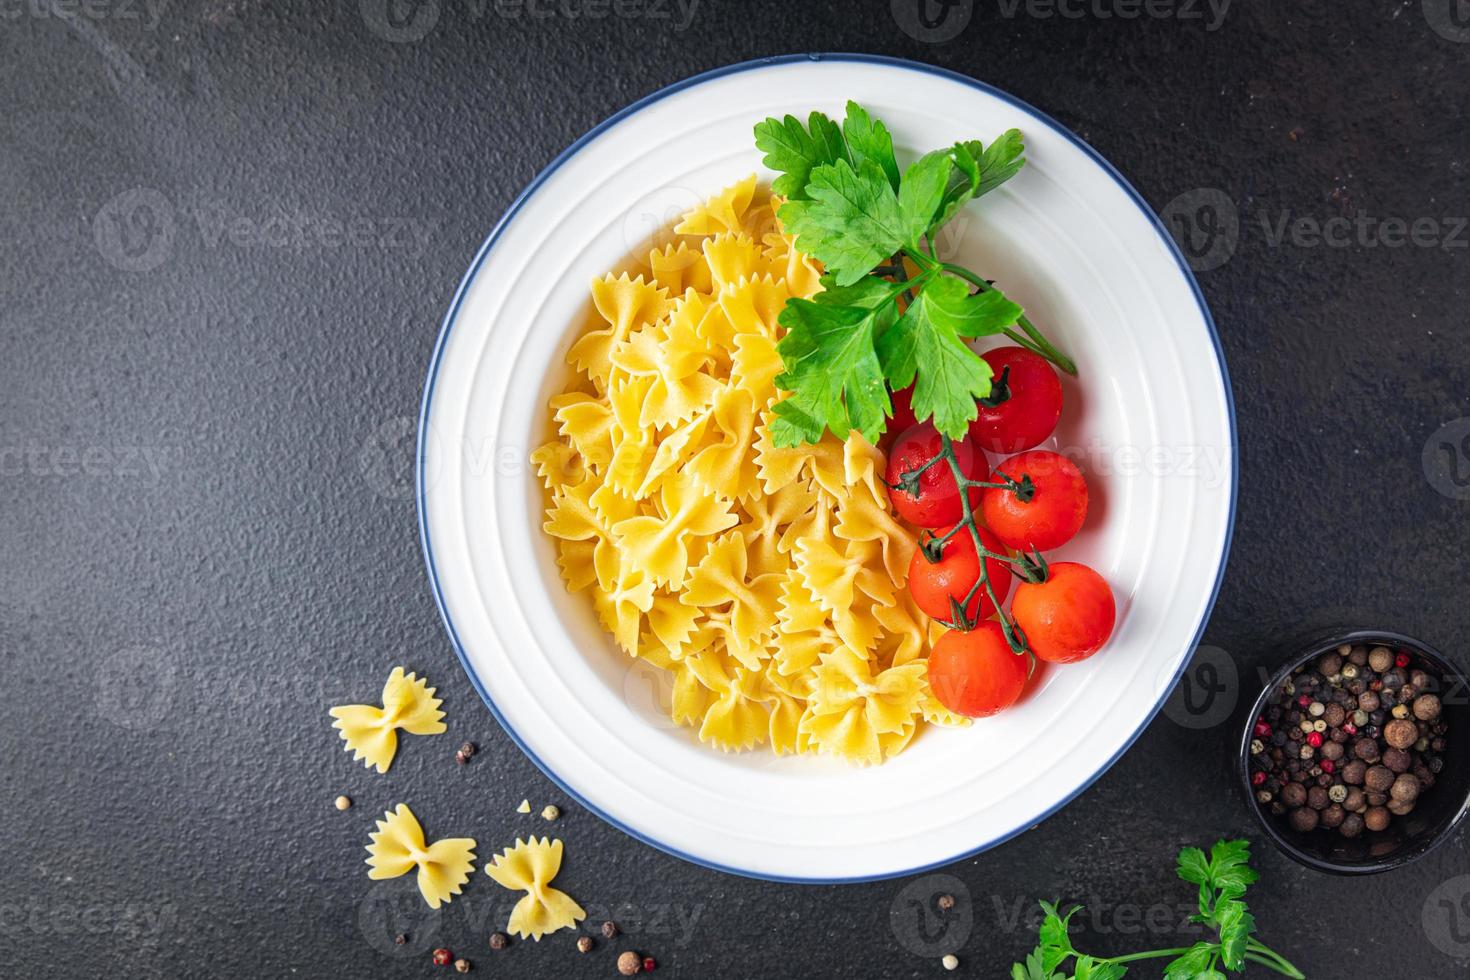 farfalle pasta råbågar durumvete hälsosam måltid foto